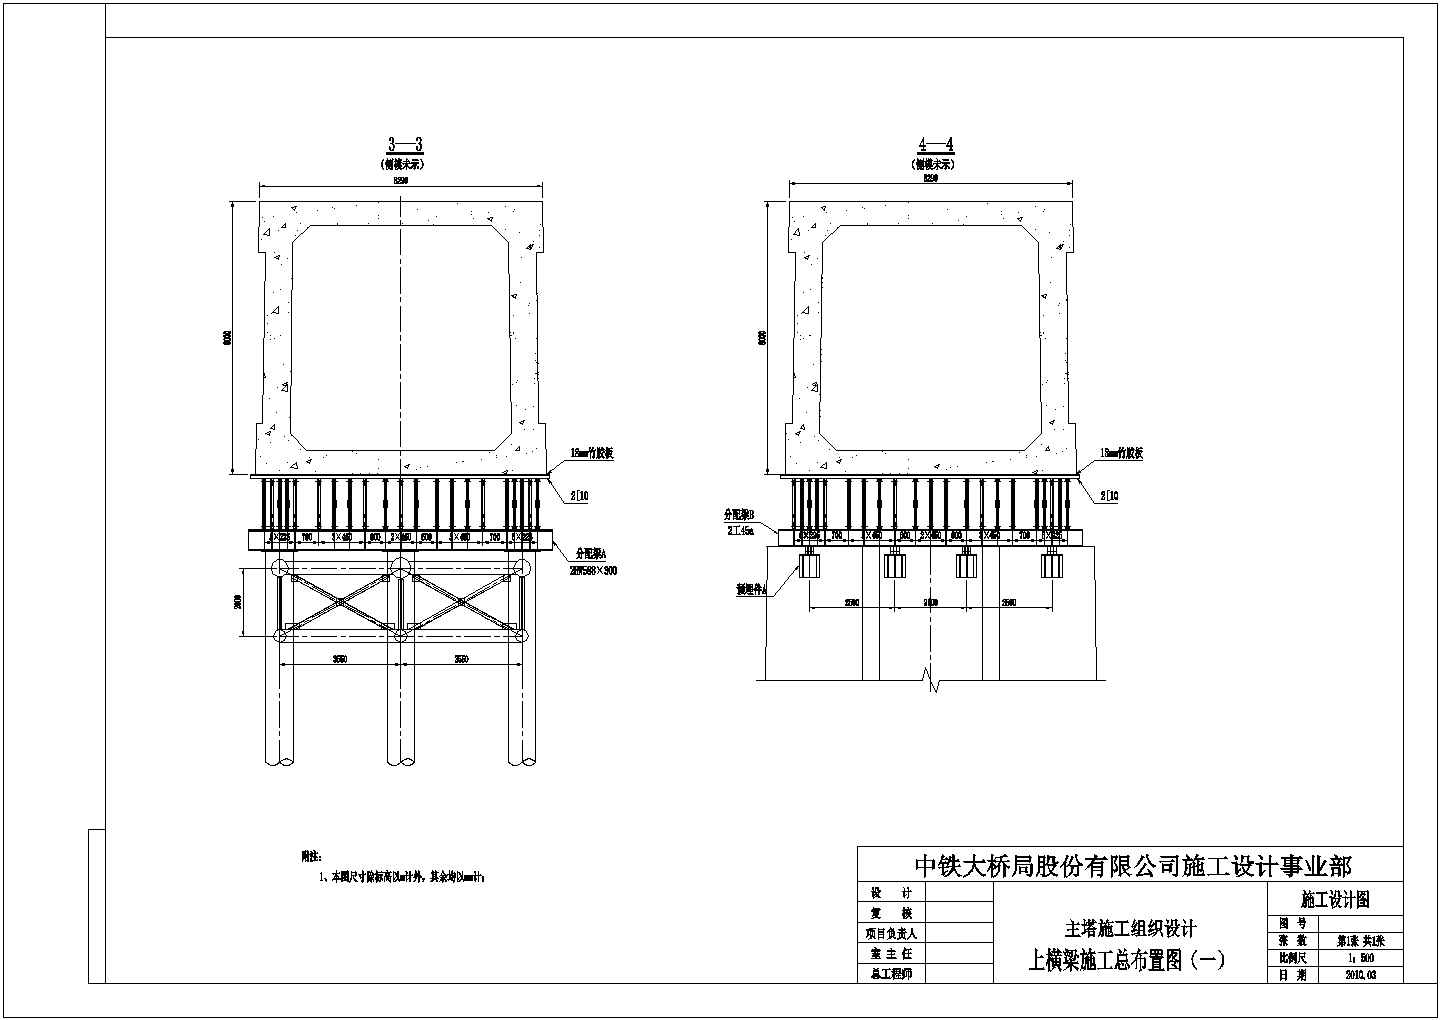 武黄城际铁路某公铁两用长江大桥工程主塔施工组织设计图